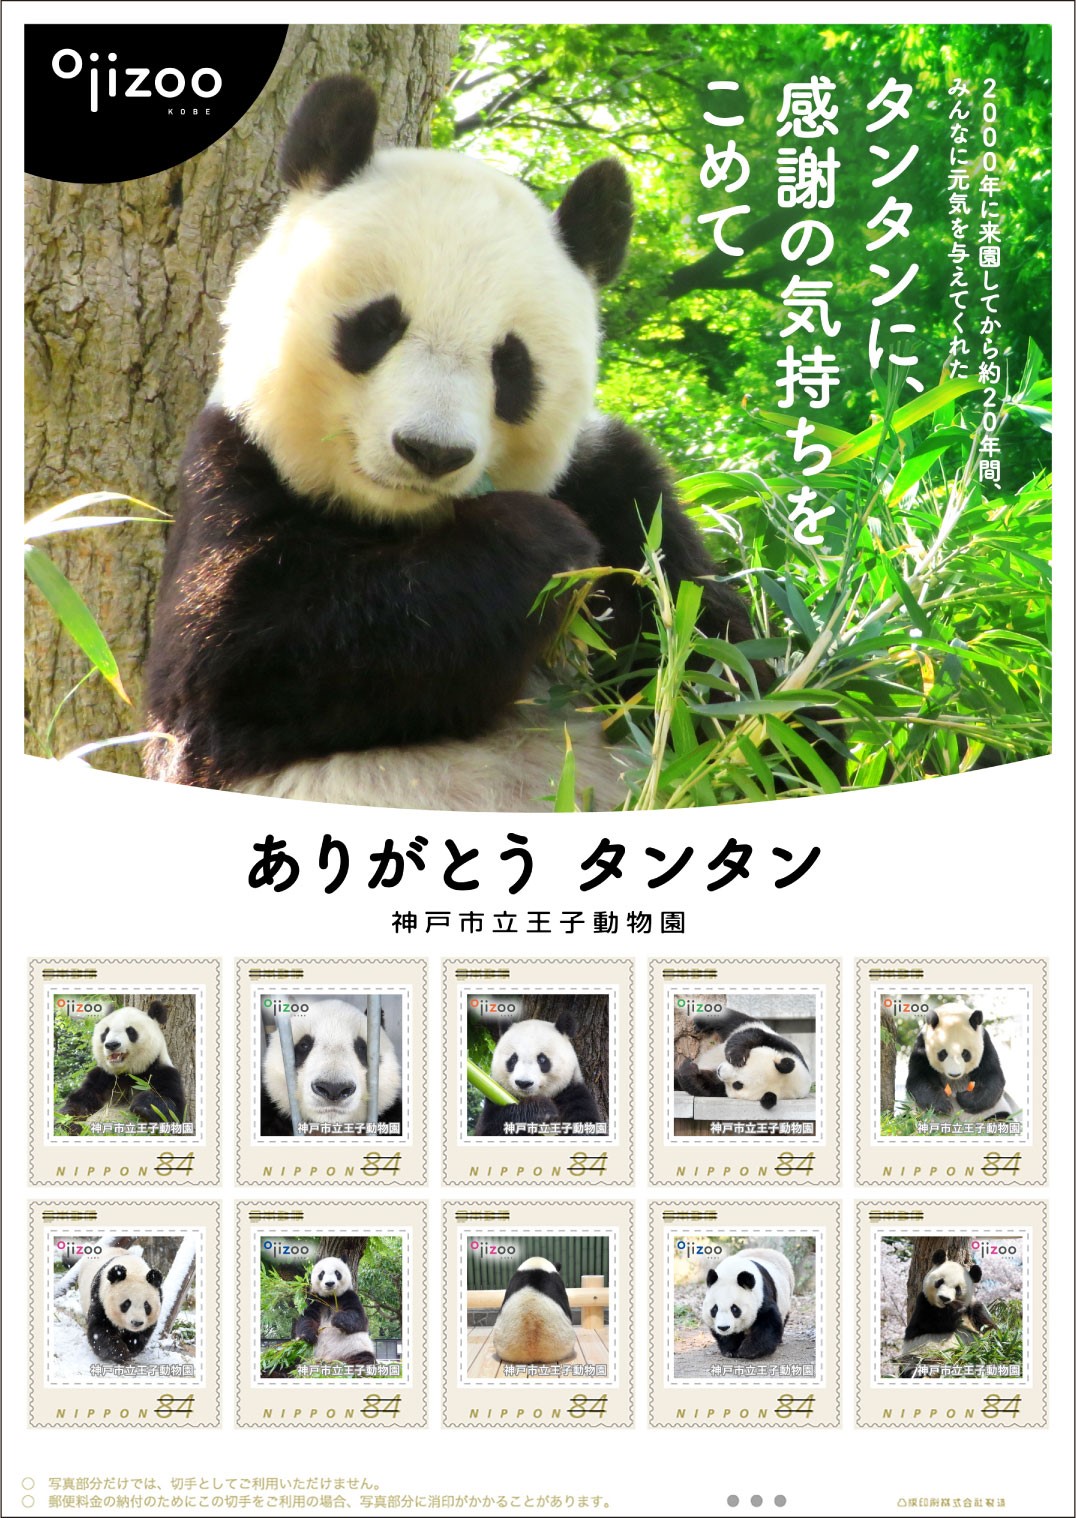 神戸・王子動物園のジャイアントパンダ「タンタン」が切手に 